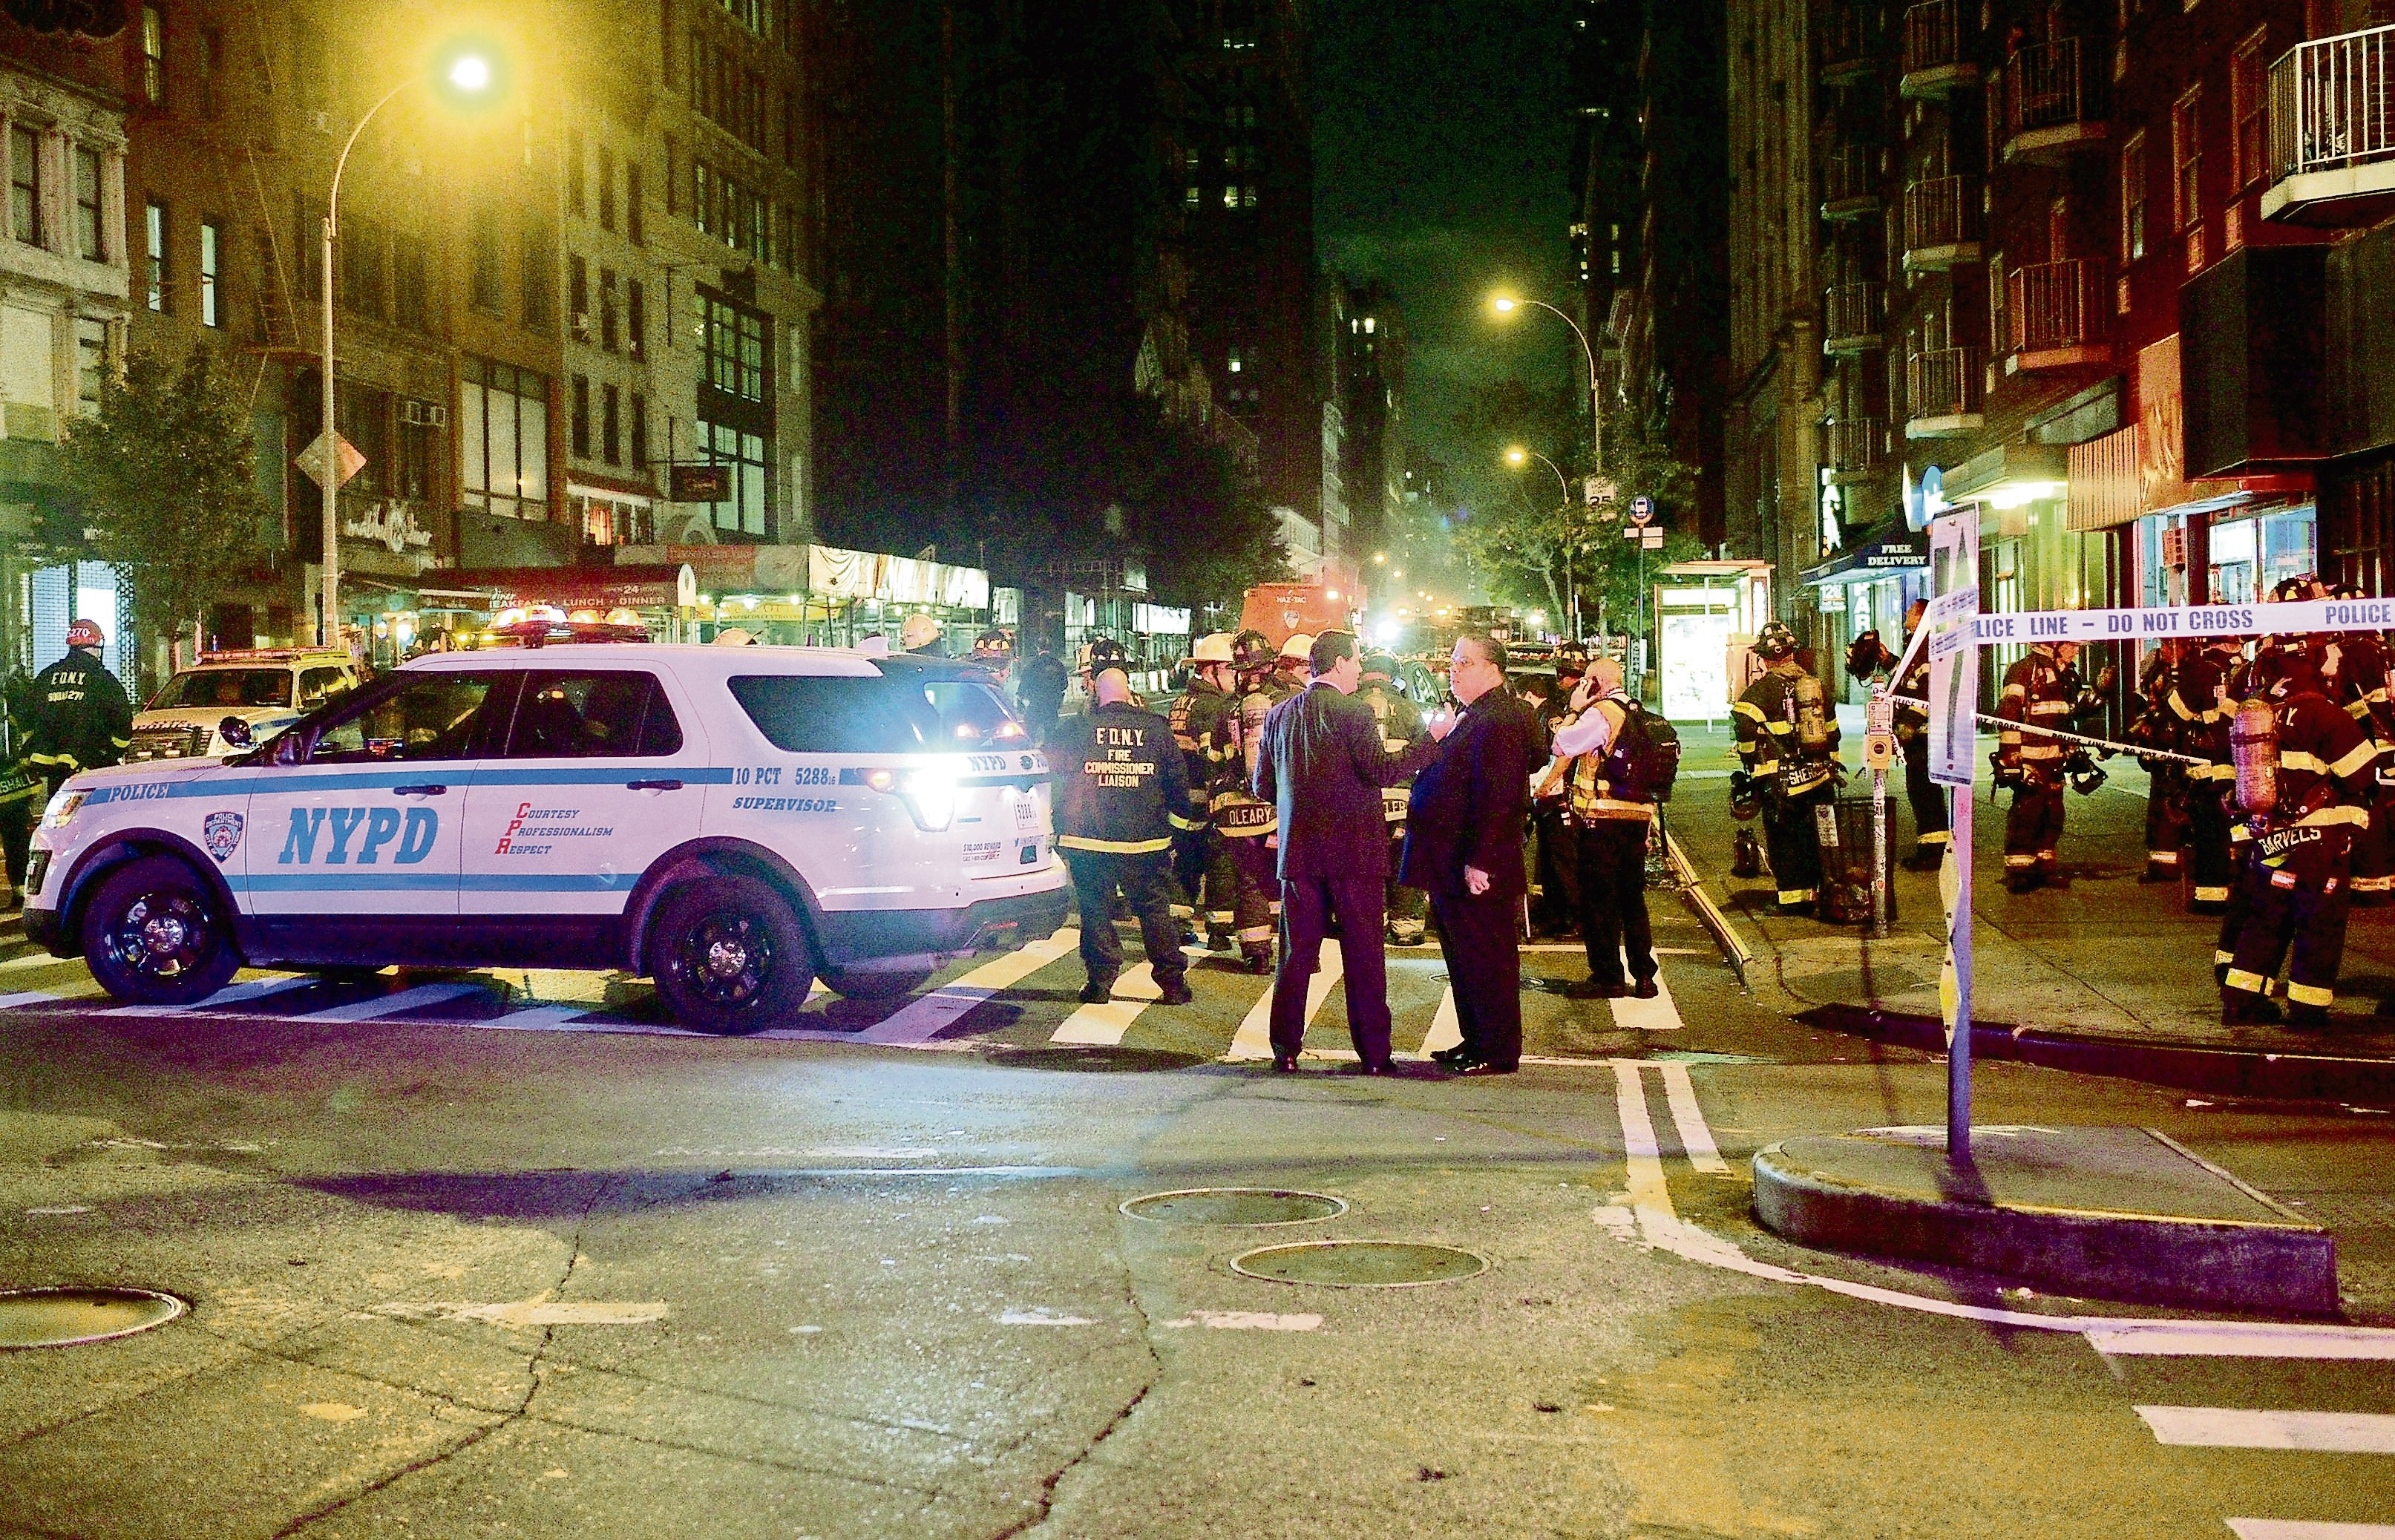  Explosión en NY causa pánico y 29 heridos